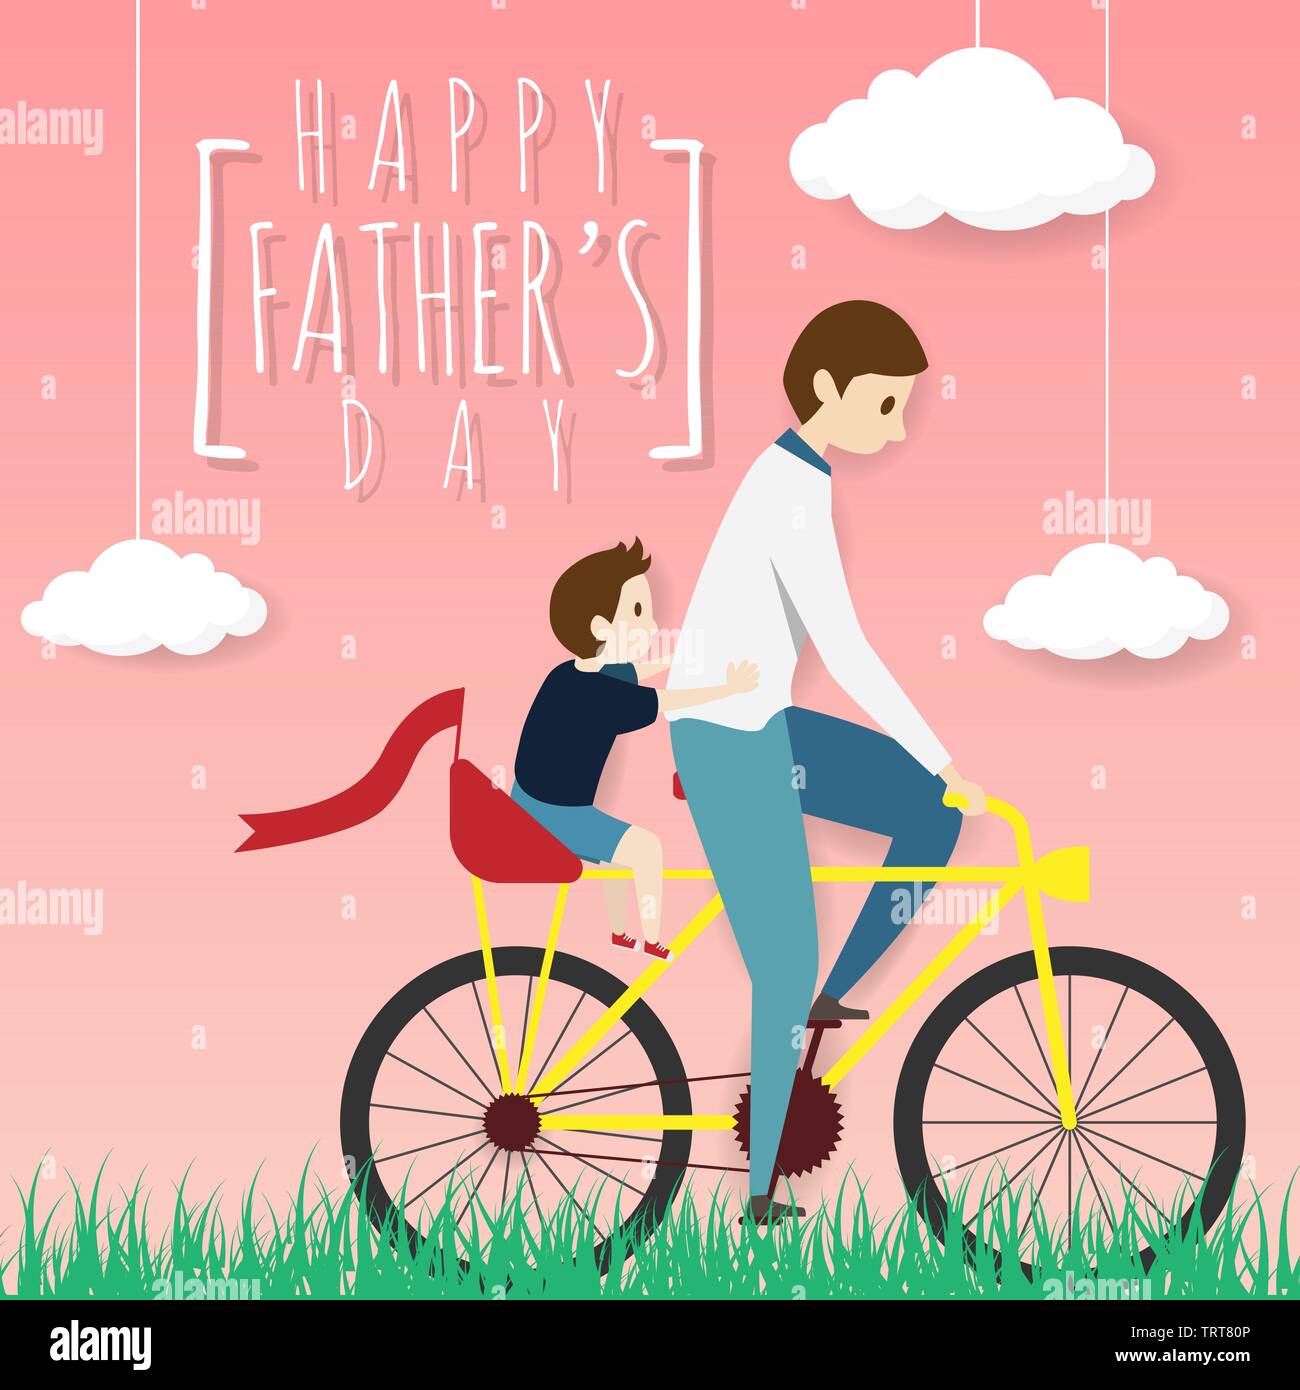 Der Vektor der happy Vatertag Grußkarte. Vater radfahren Fahrrad mit seinem Sohn fahren mit Sozius, Reiten im Gras Feld mit weißen Wolken auf Rosa b Stock Vektor